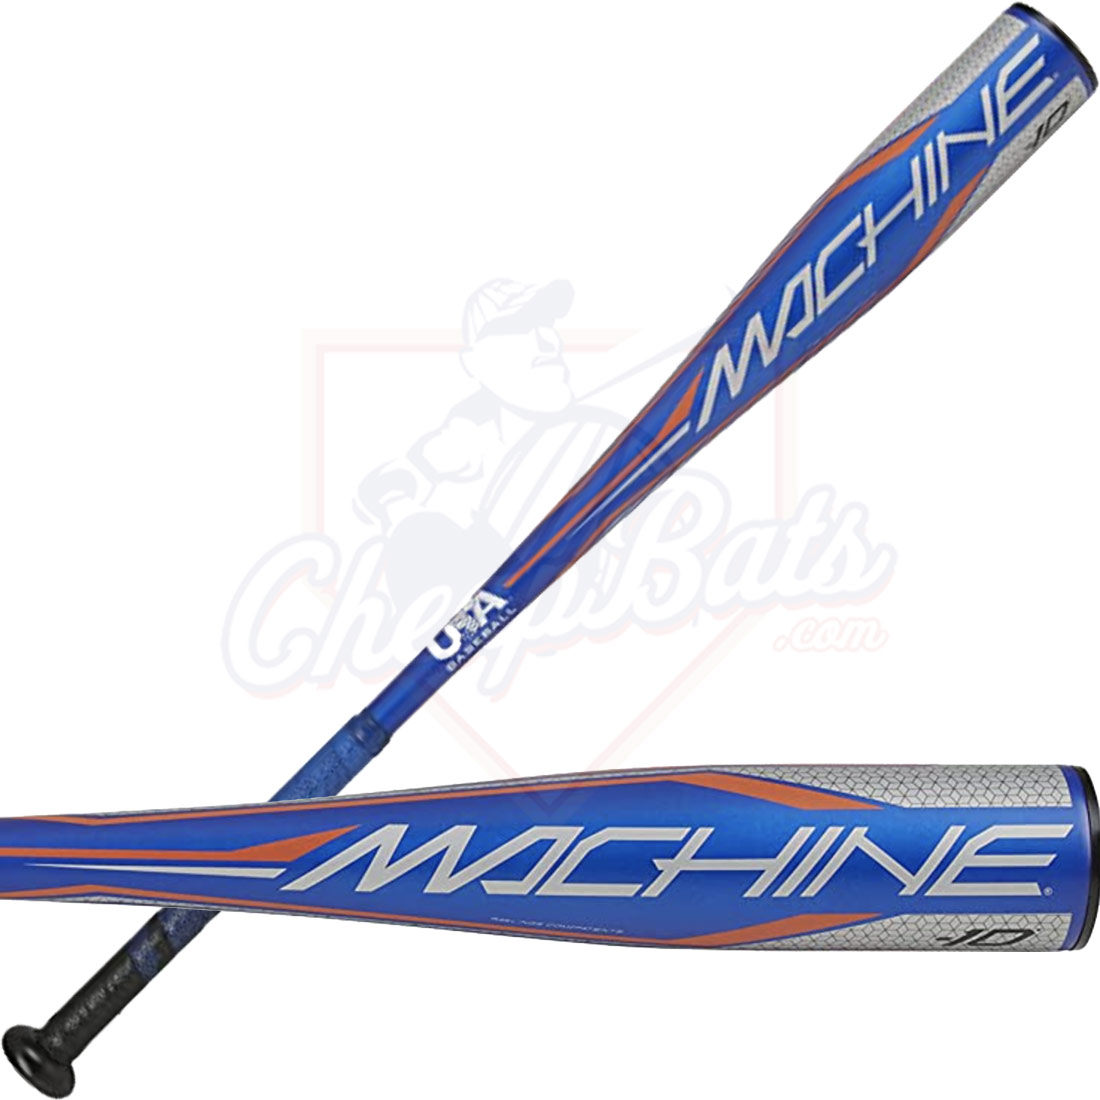 2021 Rawlings Machine Youth USA Baseball Bat -10oz US1M10